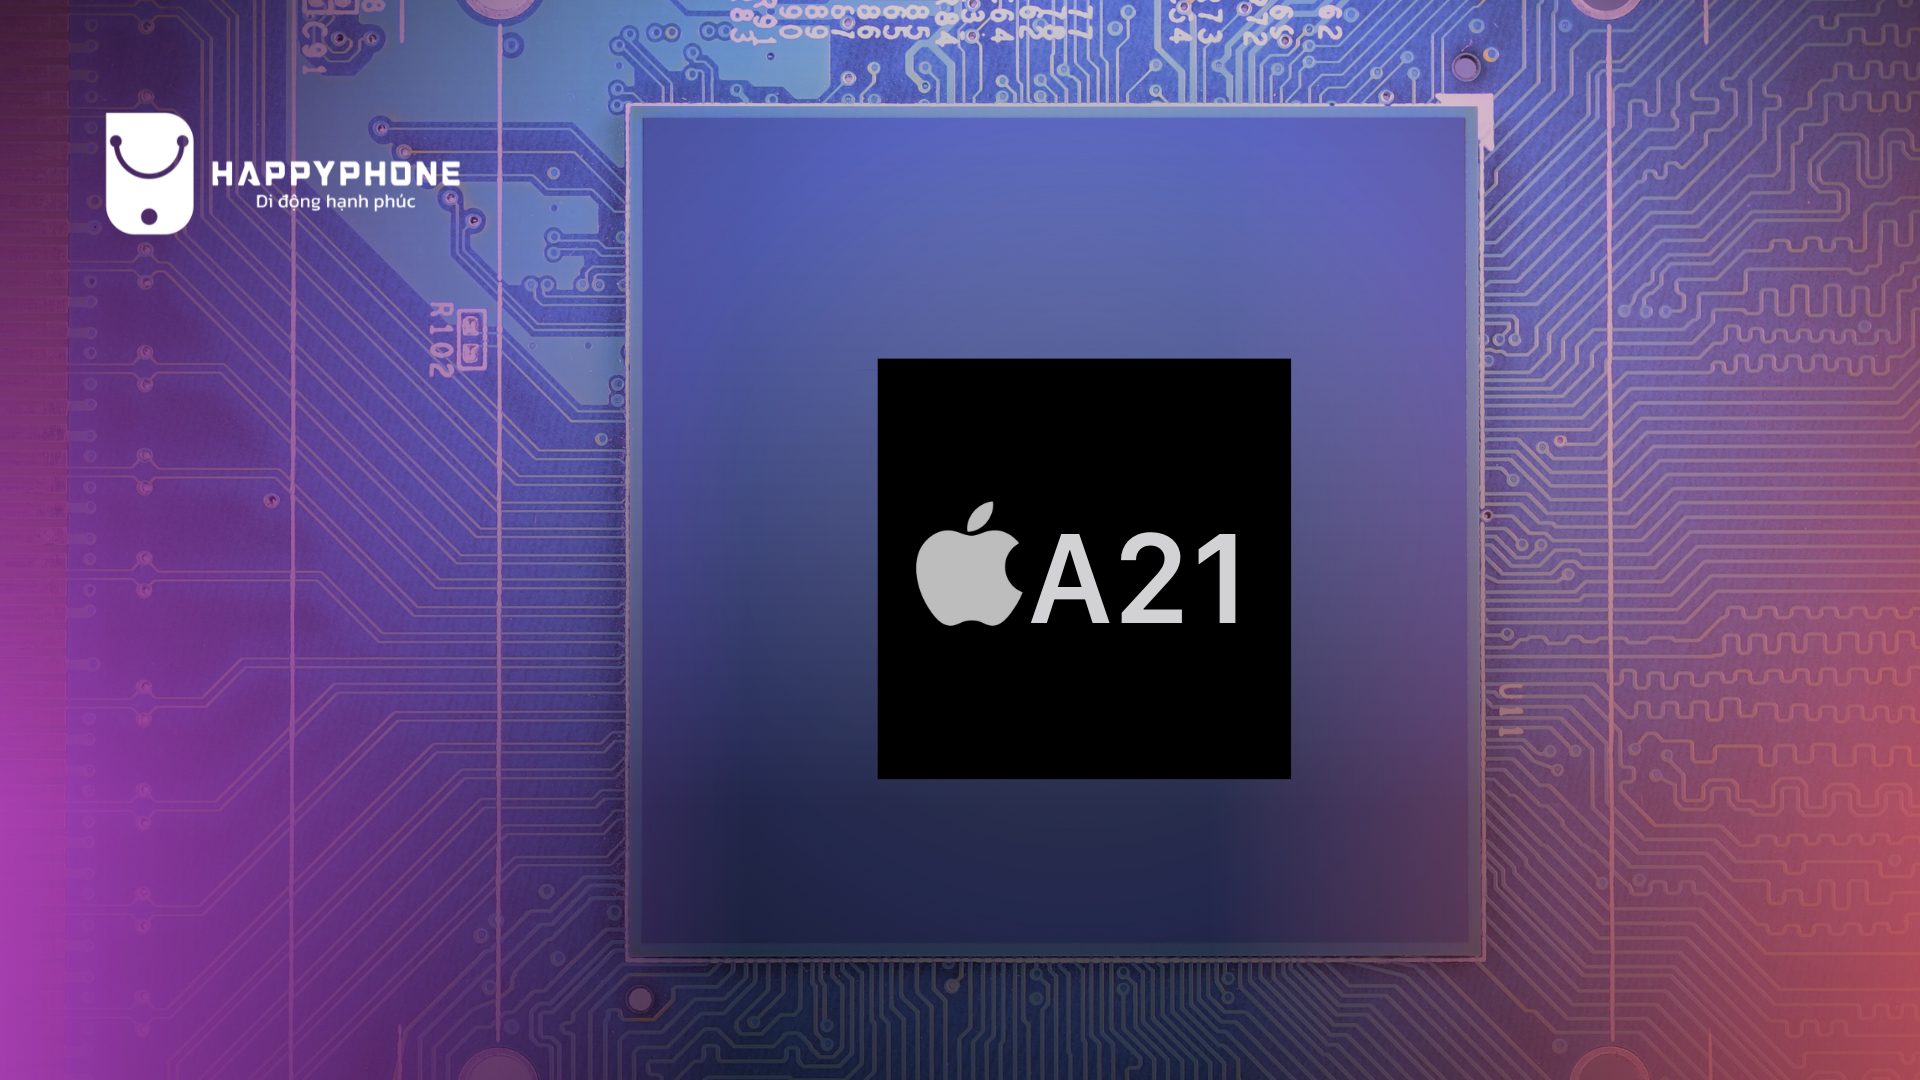 Con chip A21 với công nghệ AI tiên tiến iphone 19